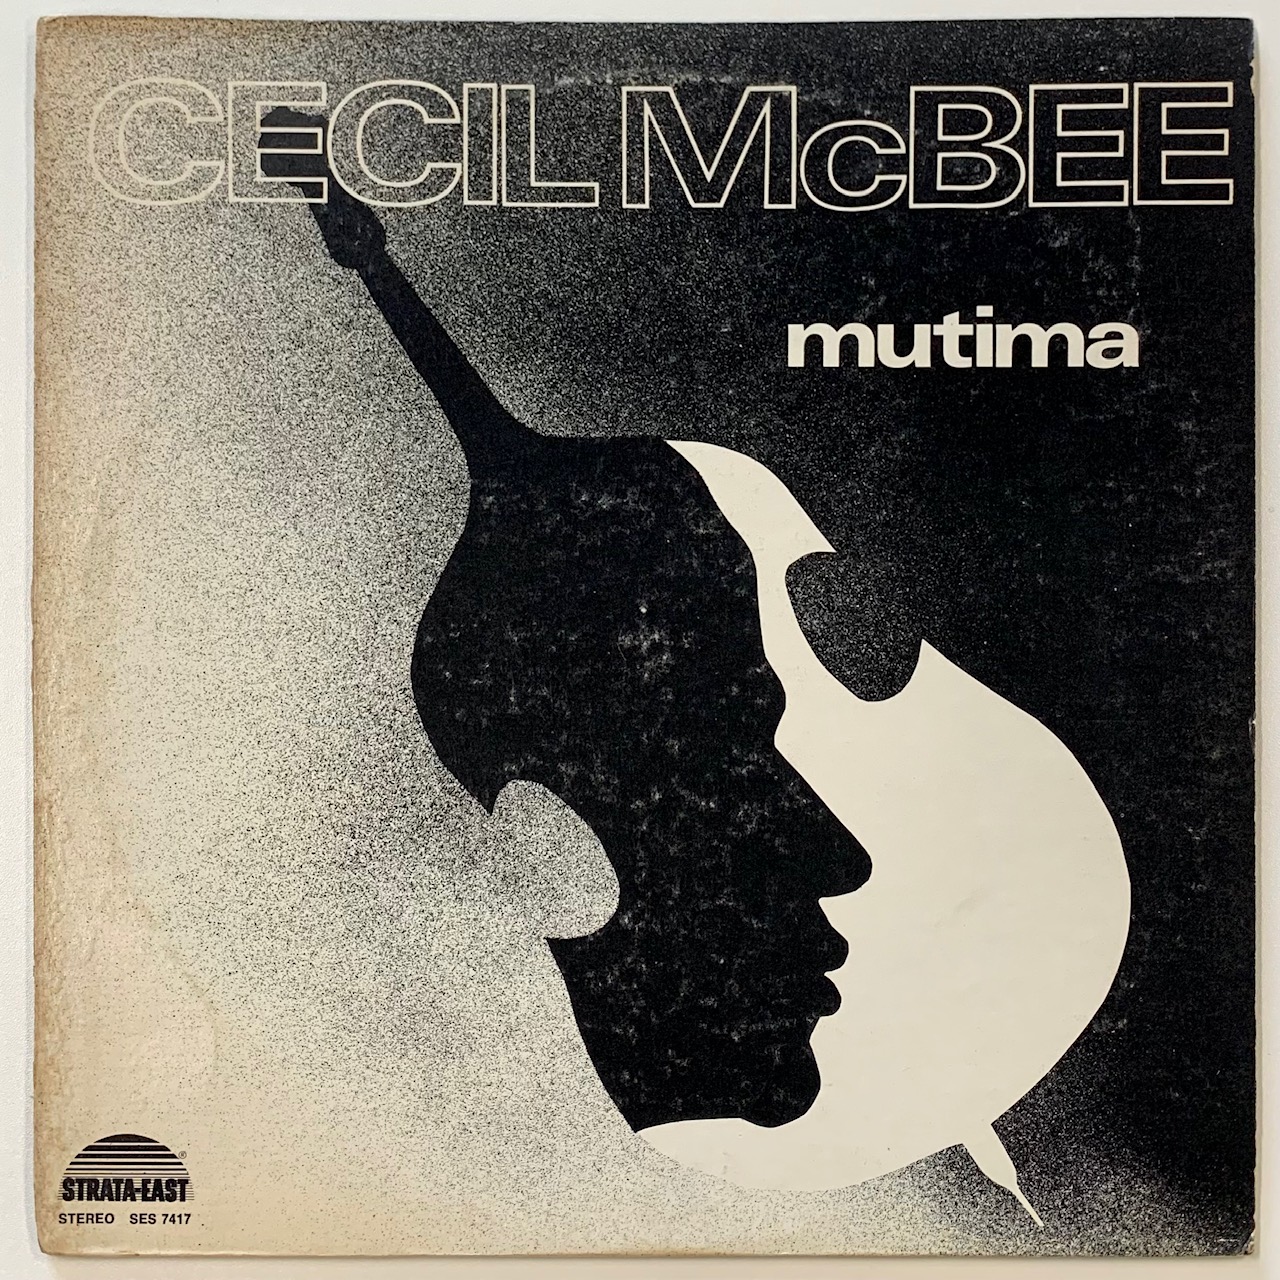 CECIL McBEE - MUTIMA